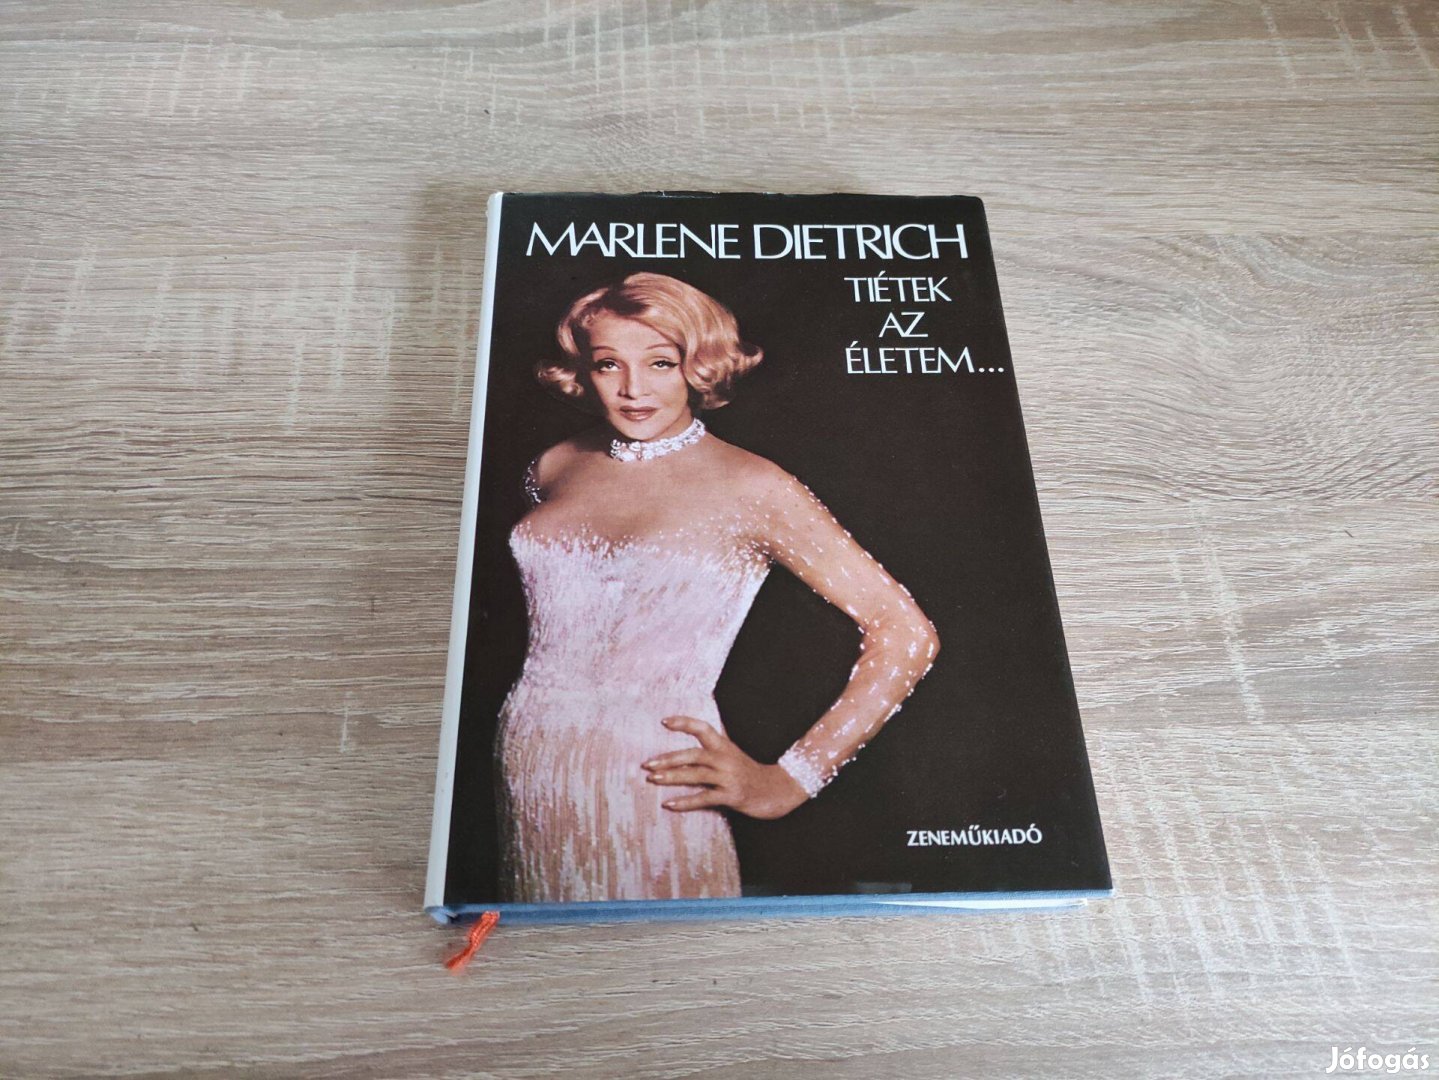 Marlene Dietrich élete